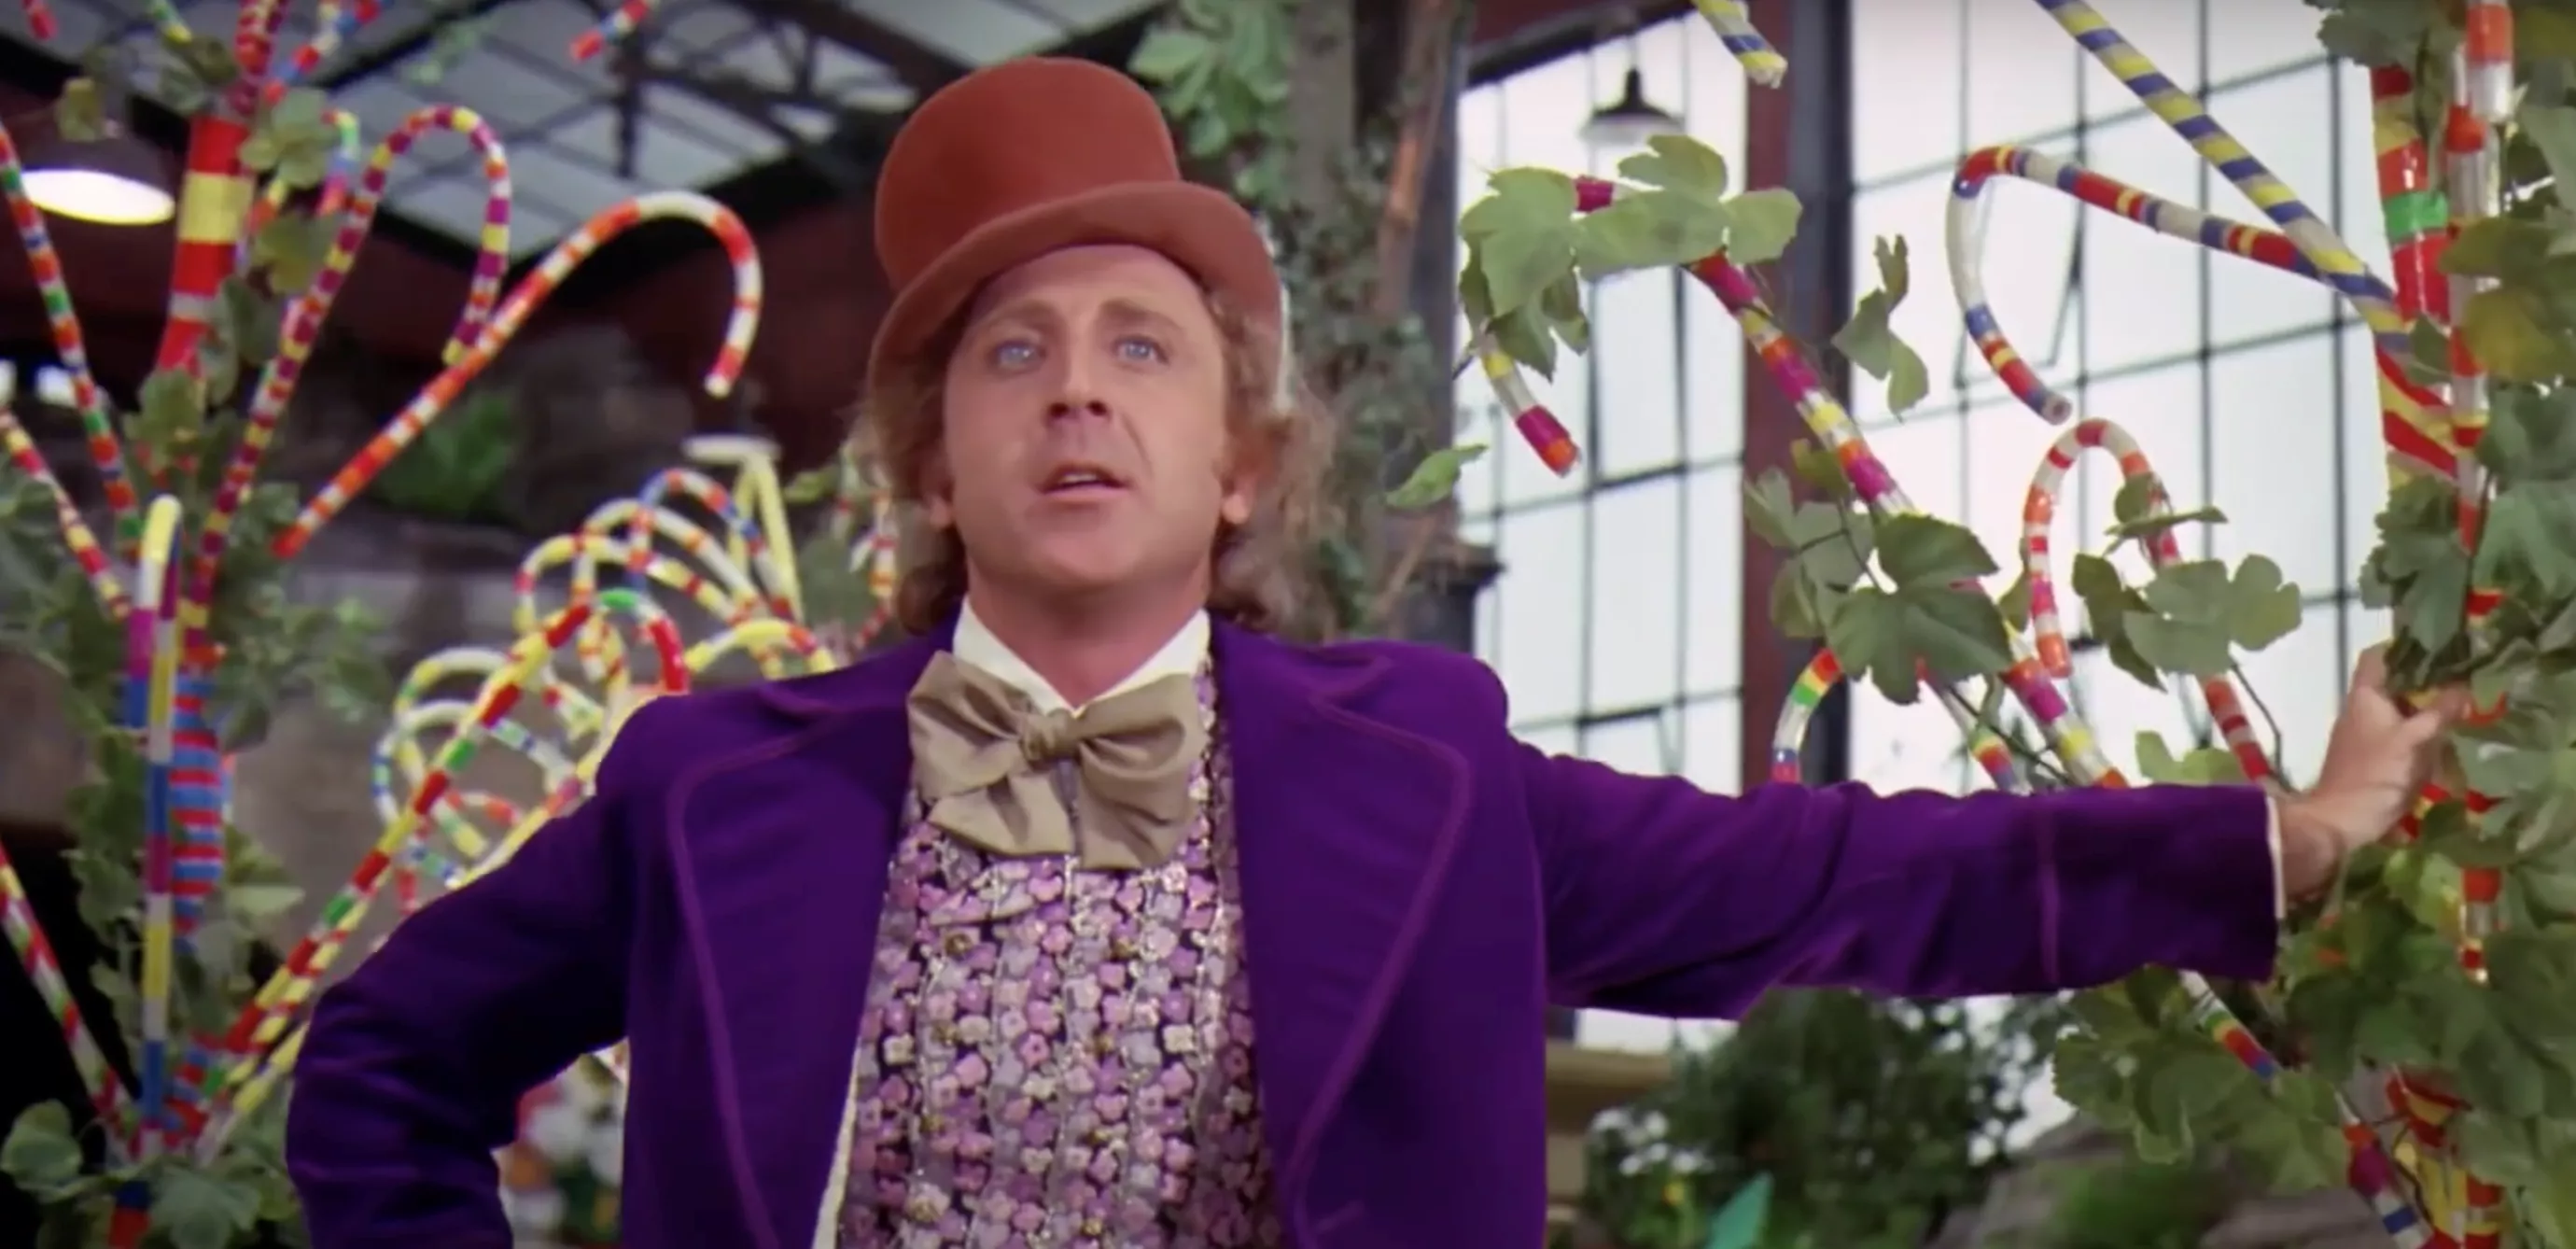 Komponisten bag Willy Wonka og Goldfinger er død